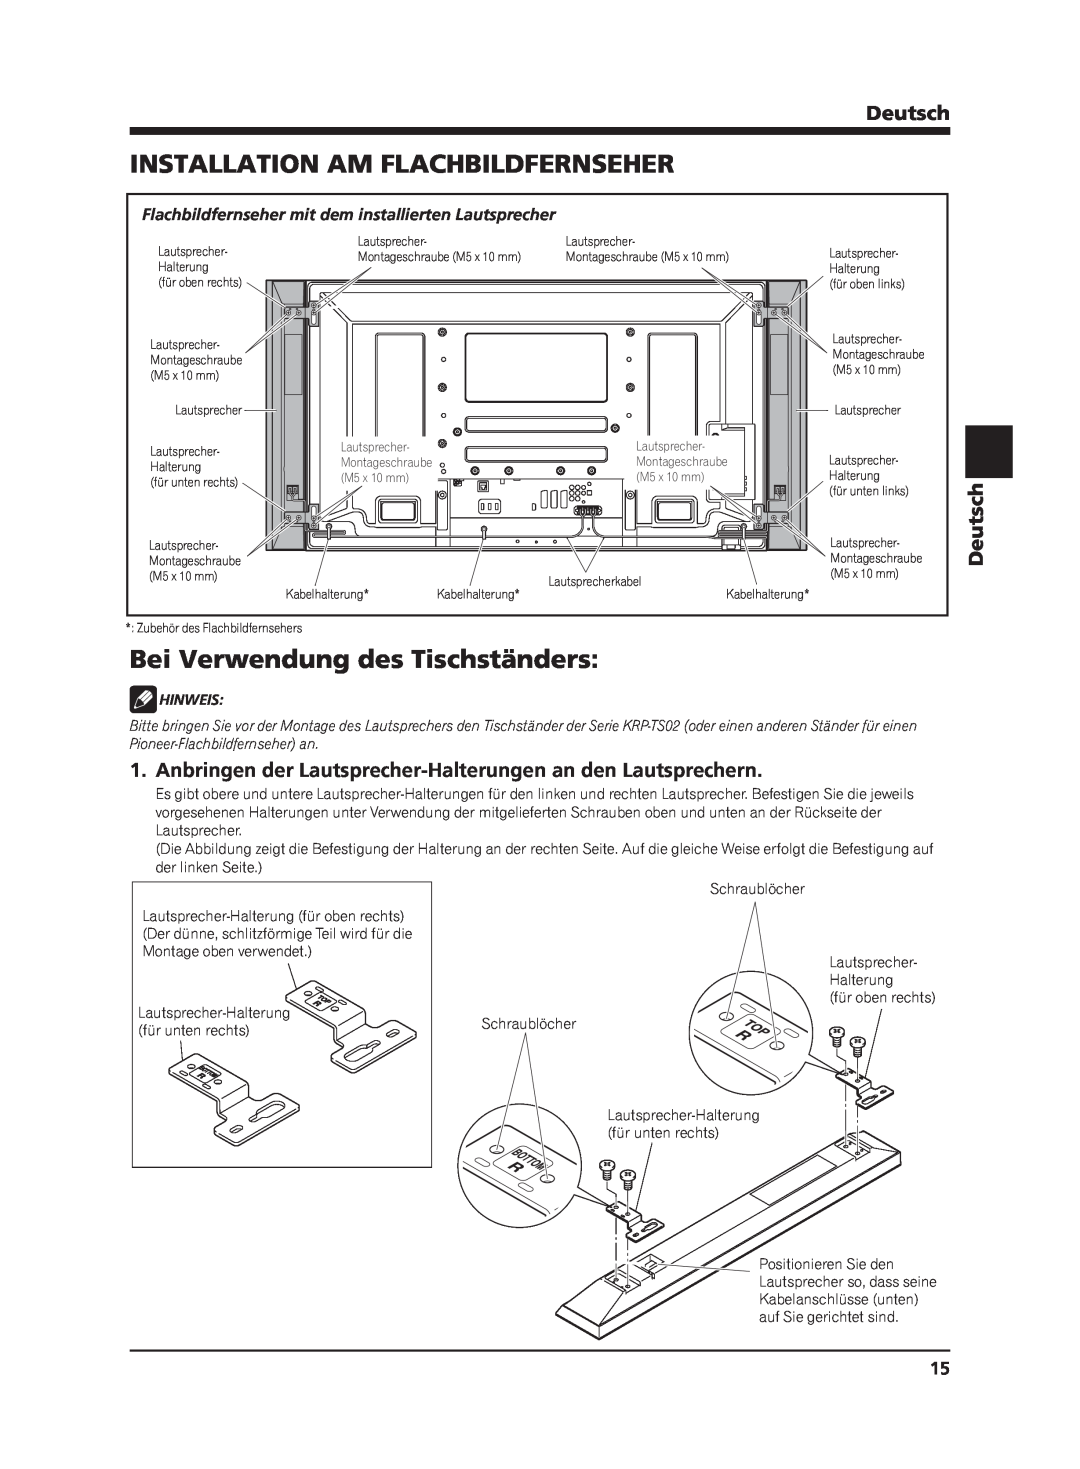 Pioneer PDP-S62 manual Installation Am Flachbildfernseher, Bei Verwendung des Tischständers, Deutsch, Hinweis 